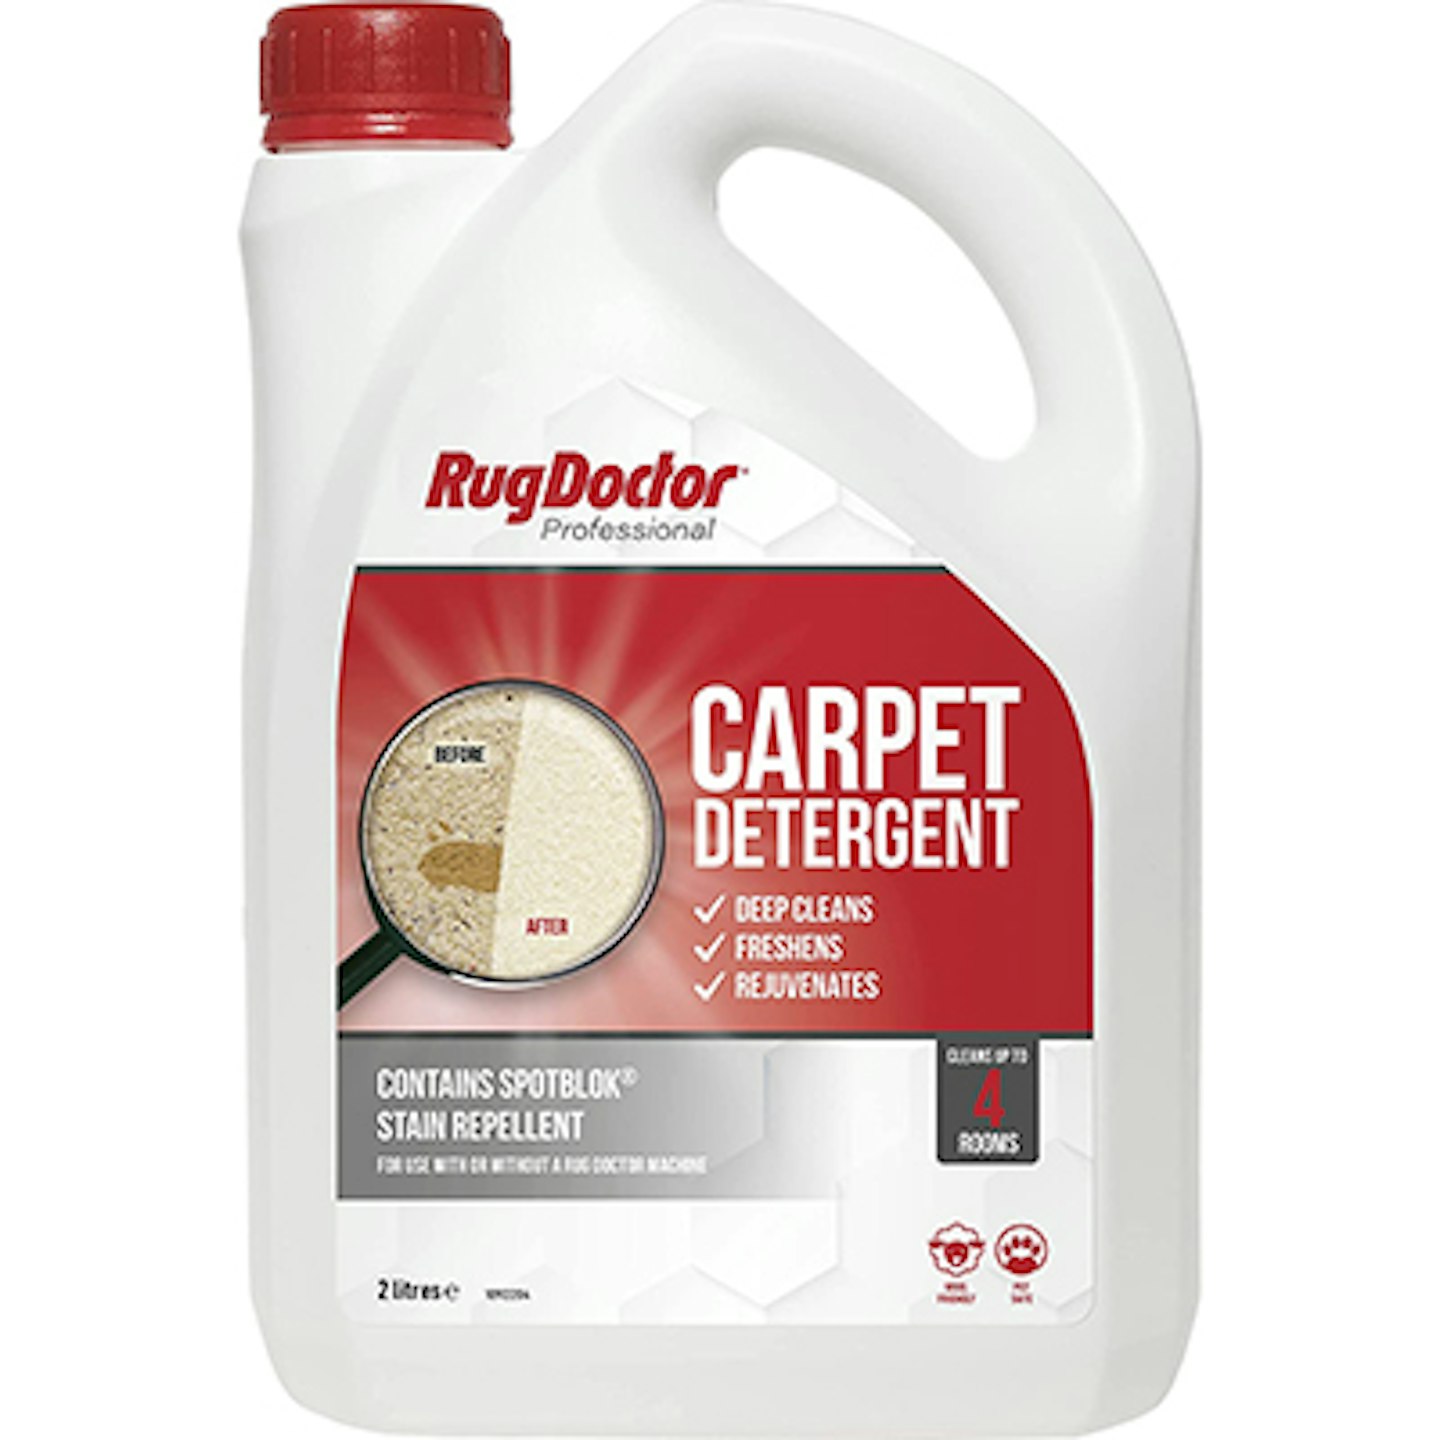 Rug Doctor Carpet Detergent